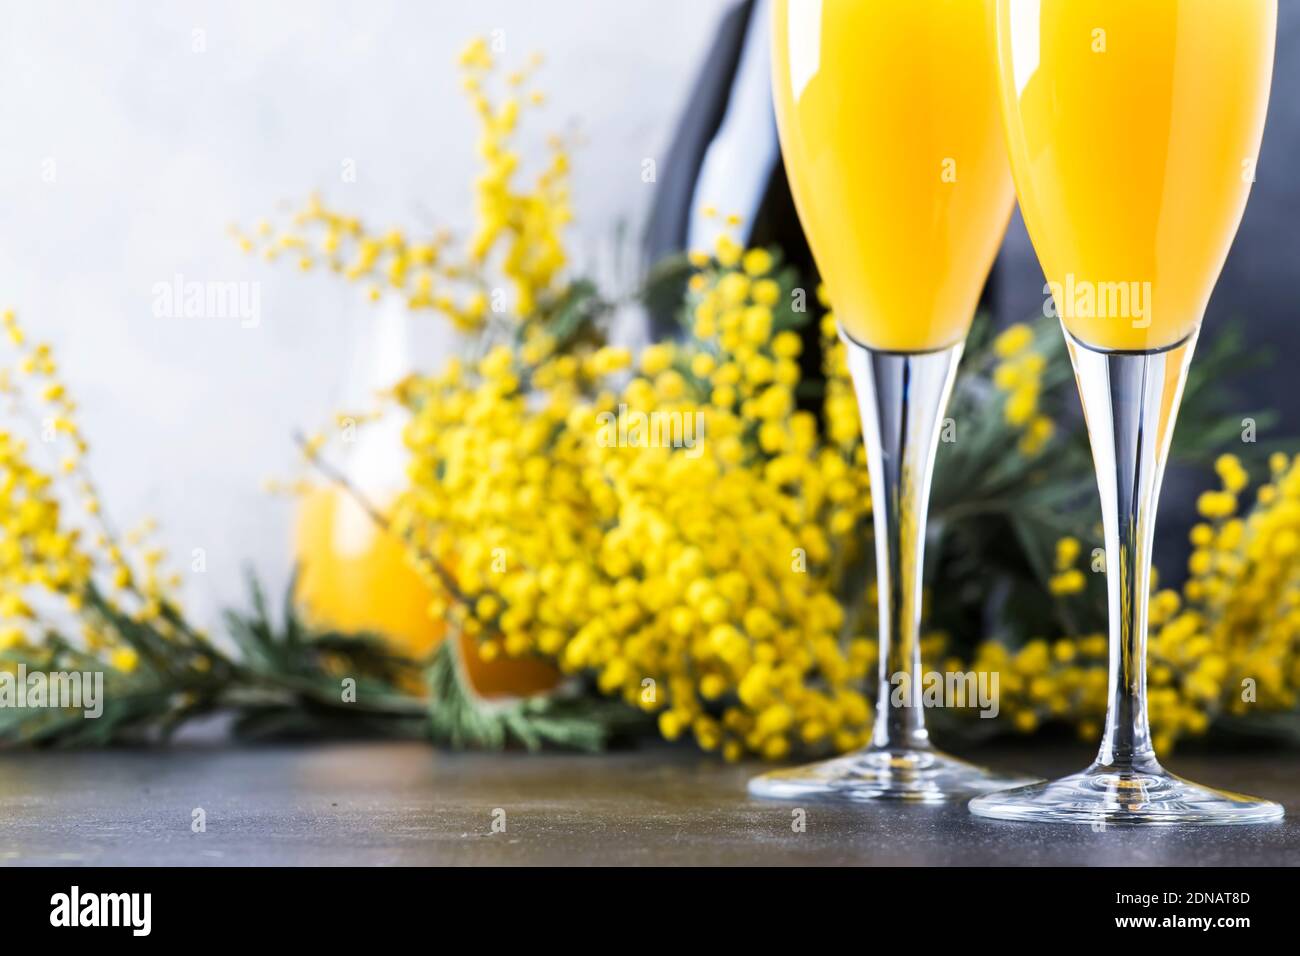 Cóctel de alcohol de primavera mimosa con jugo de naranja y champagne seco frío vino espumoso copas, barra gris de fondo con flores de yelow Fotografía stock - Alamy